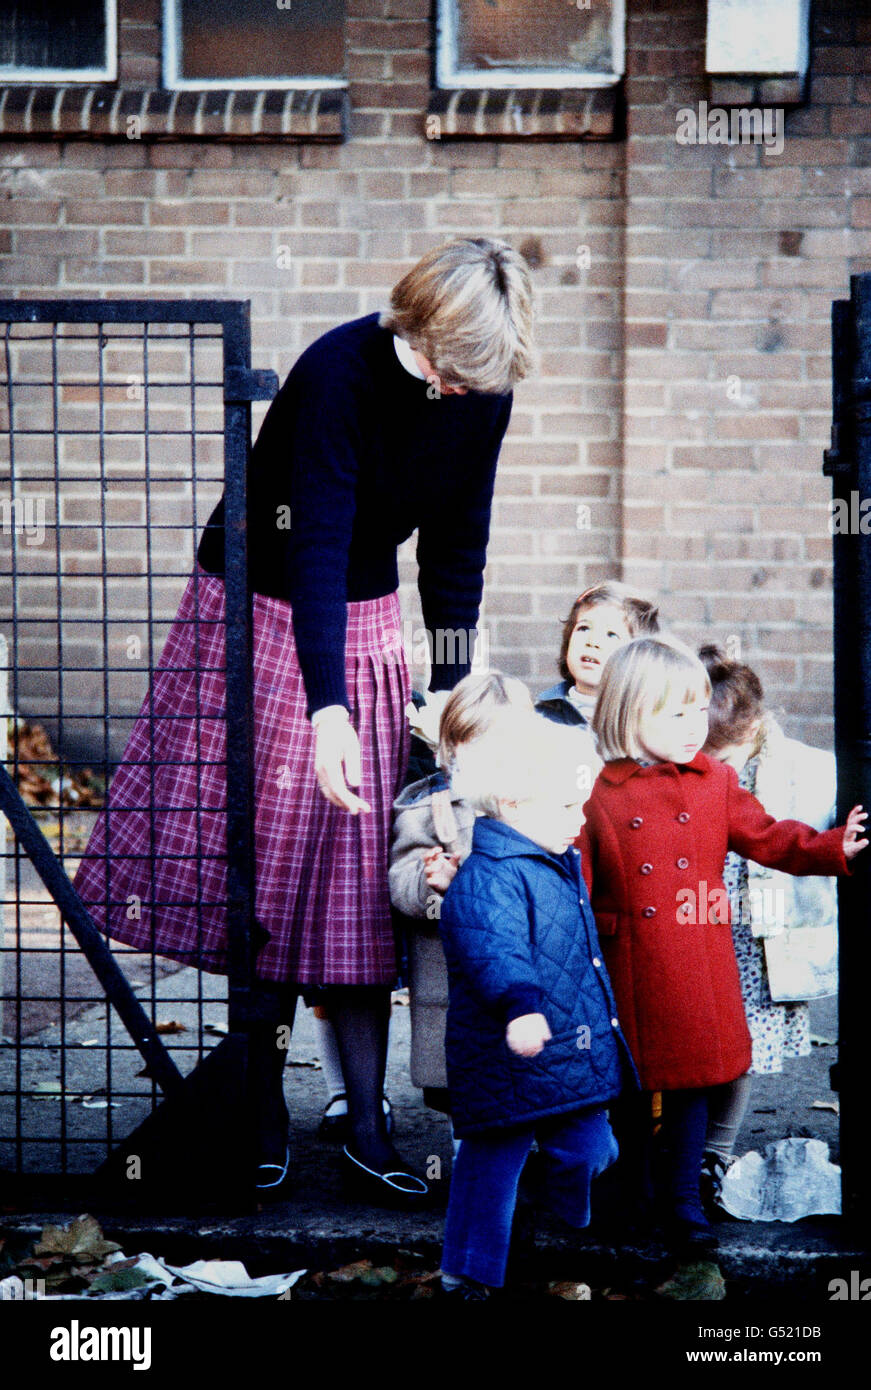 LADY DIANA SPENCER 1980: Lady Diana Spencer, die jüngste Tochter von Earl Spencer, arbeitet in einem Kindergarten am St. George's Square, Pimlico, London, wo sie Lehrerin ist. Diana (später die Prinzessin von Wales) ist laut den Presseberichten romantisch mit dem Prinz von Wales verbunden. Stockfoto